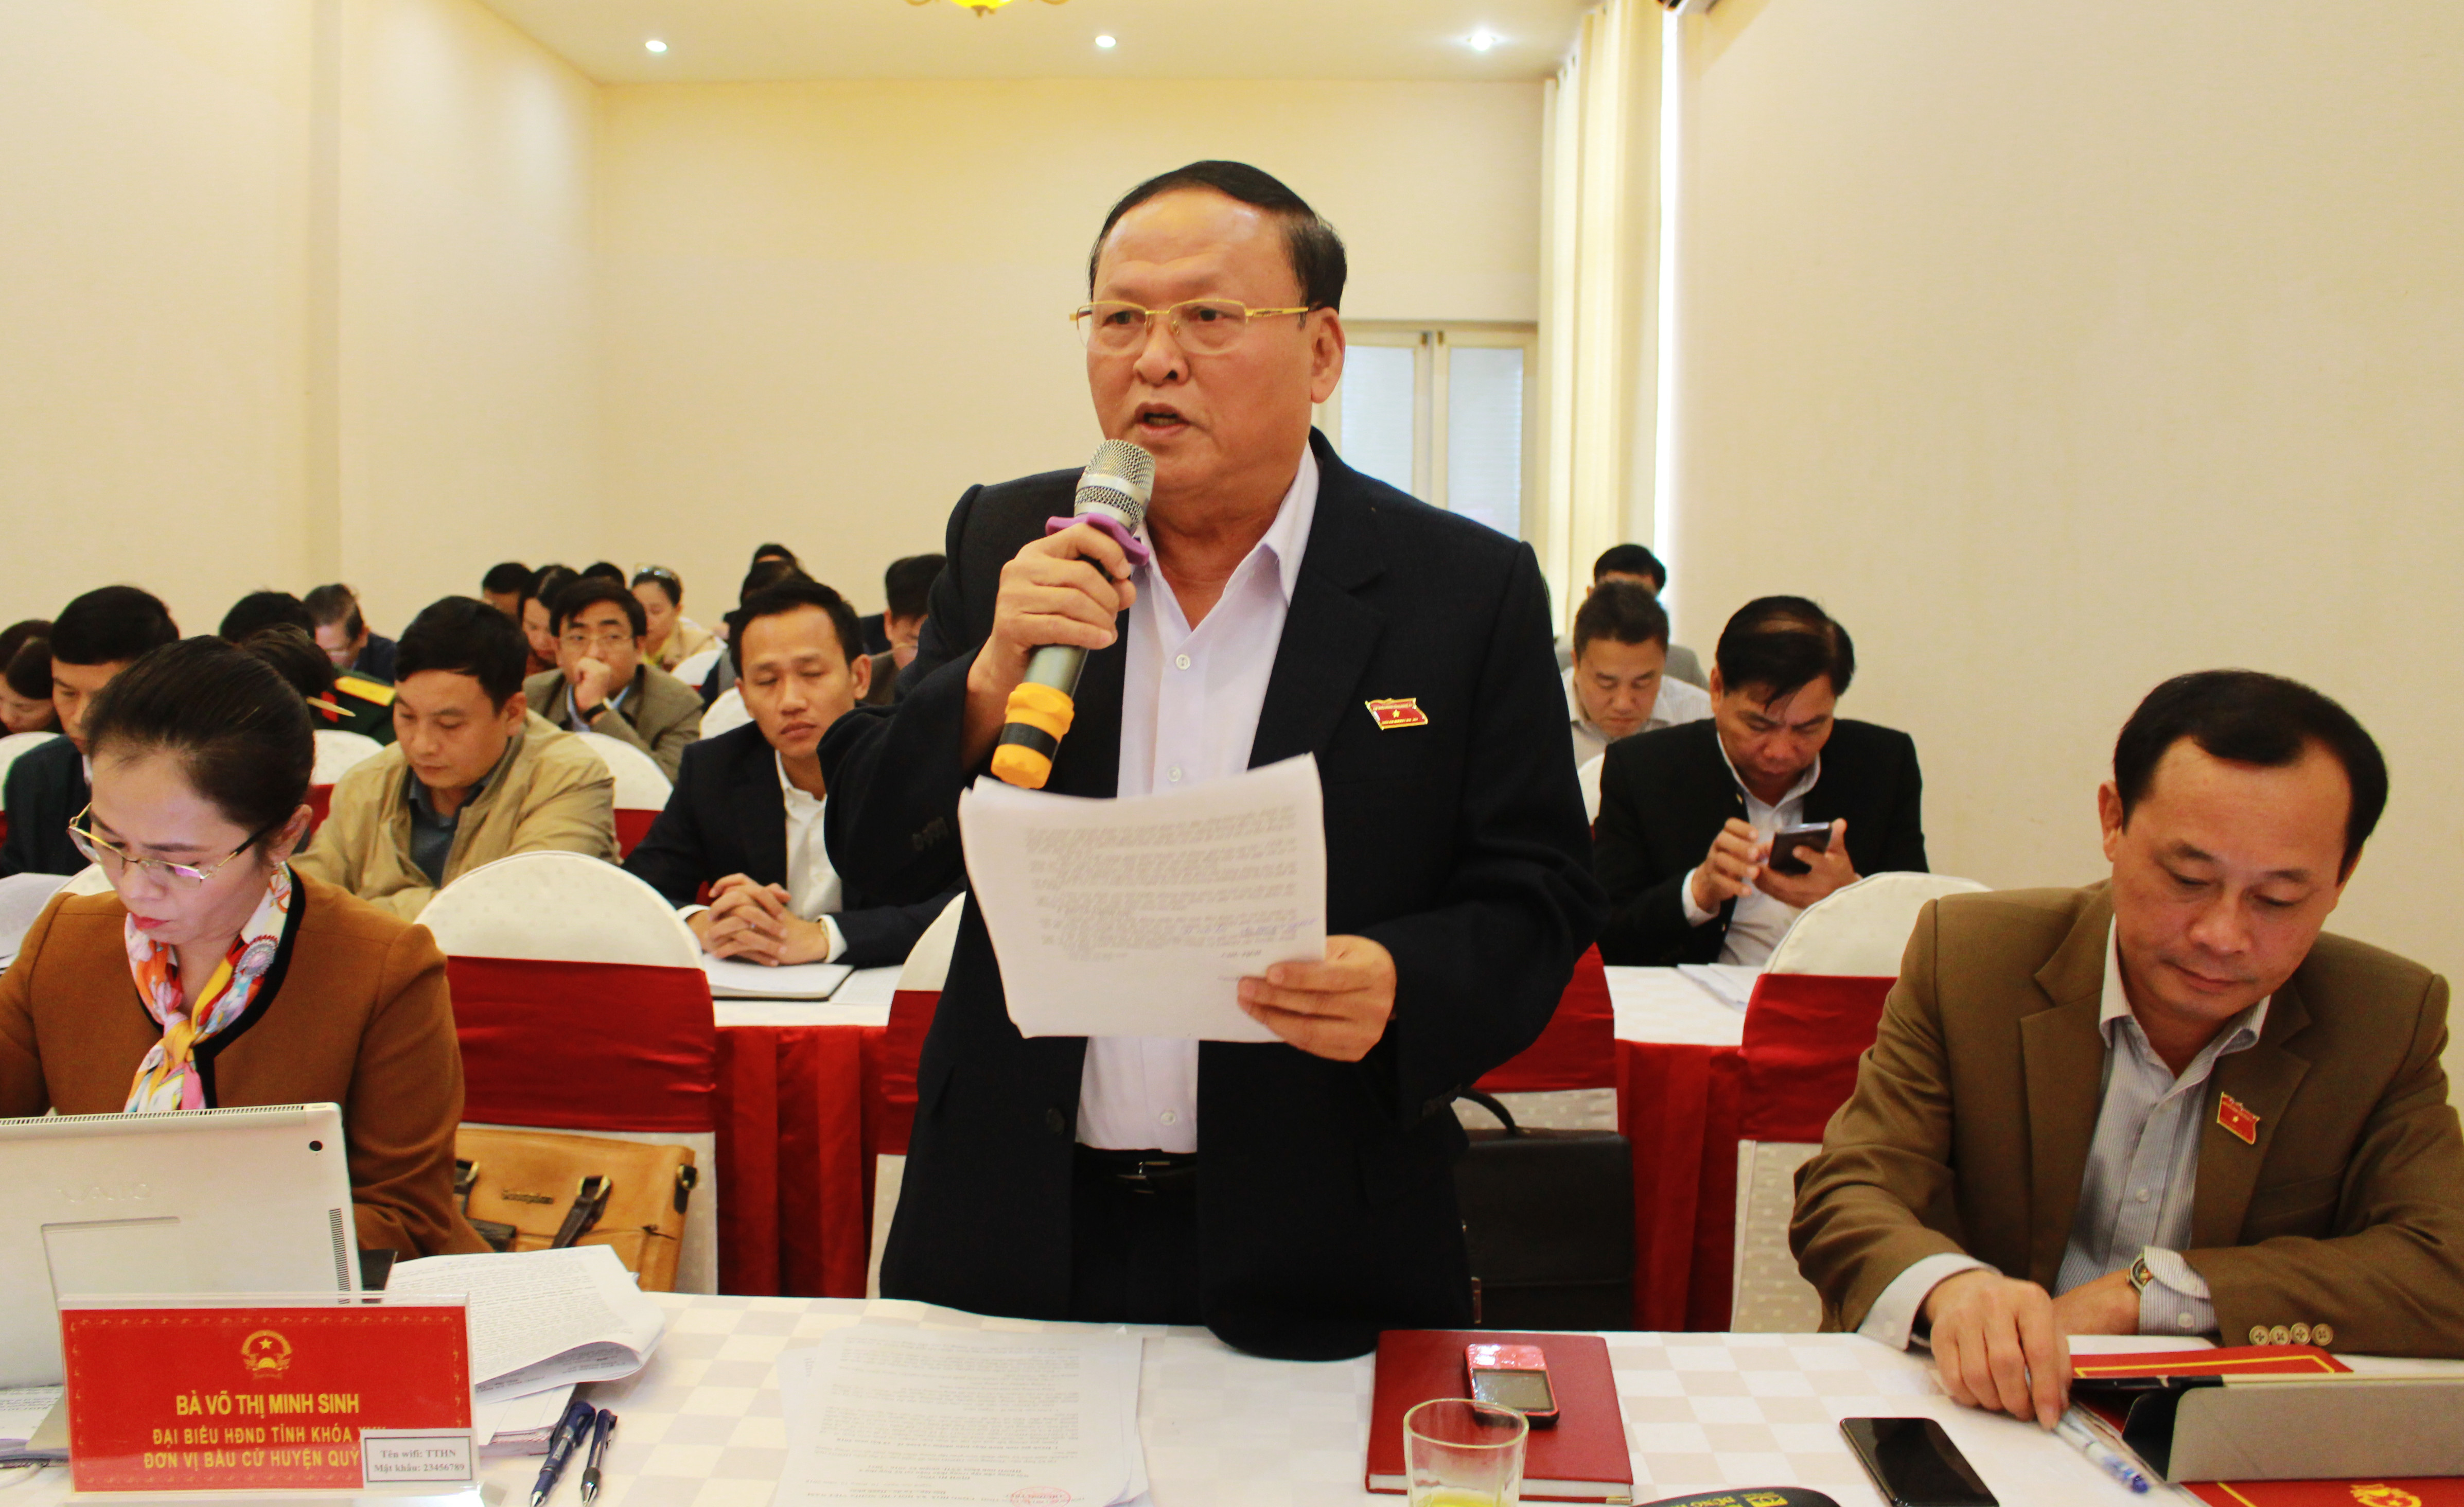 Chủ tịch Hội Cựu chiến binh Nghệ An, đại biểu HĐND tỉnh Nghệ An Nguyễn Đình Minh phát biểu tại phiên thảo luận tổ 6